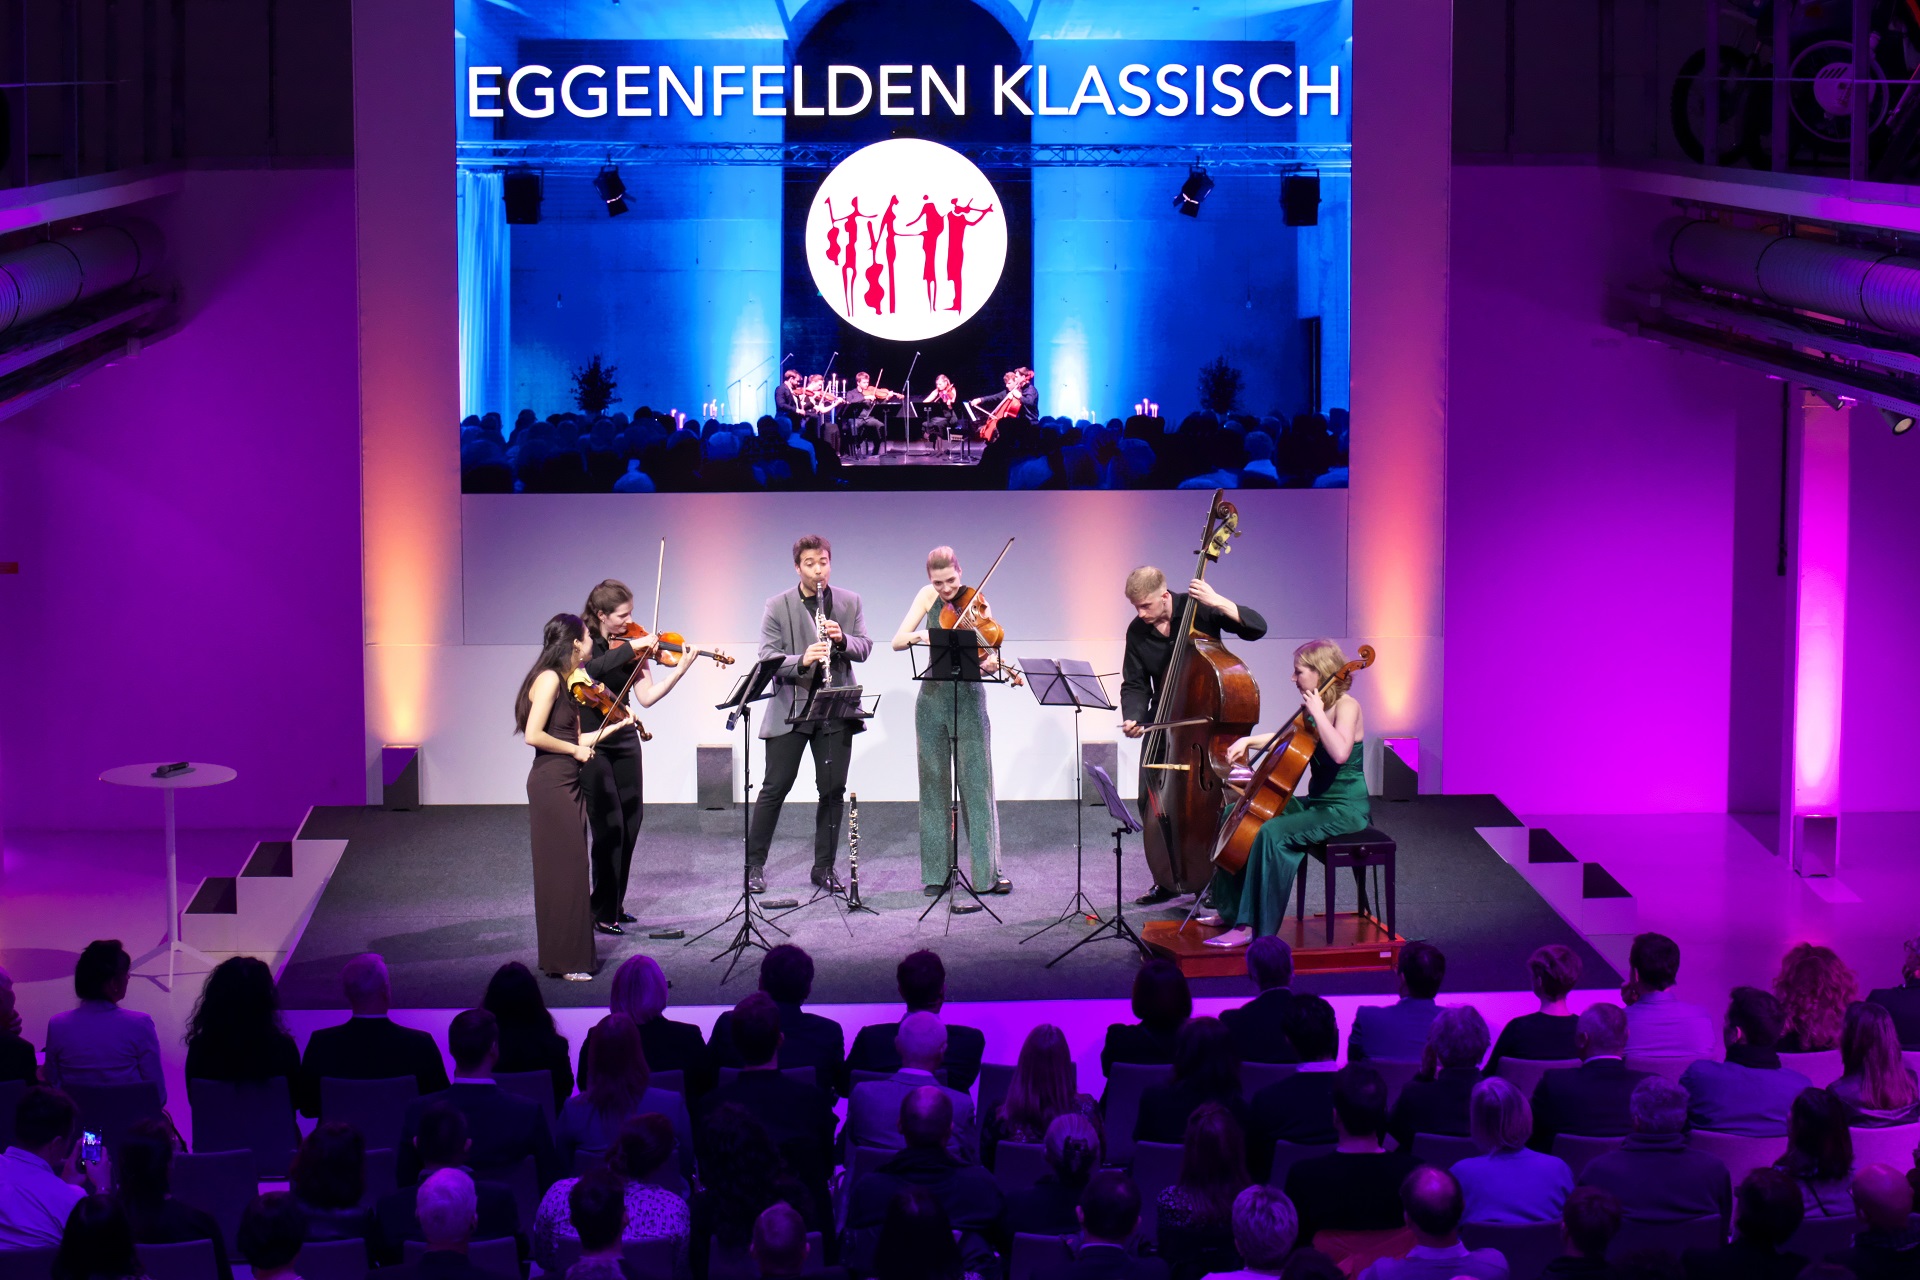 Klassik meets Classic 2023: Benefizkonzert mit dem Ensemble "Eggenfelden klassik", organisiert von der BMW Group e.V. zugunsten von Helfende Hände e.V.